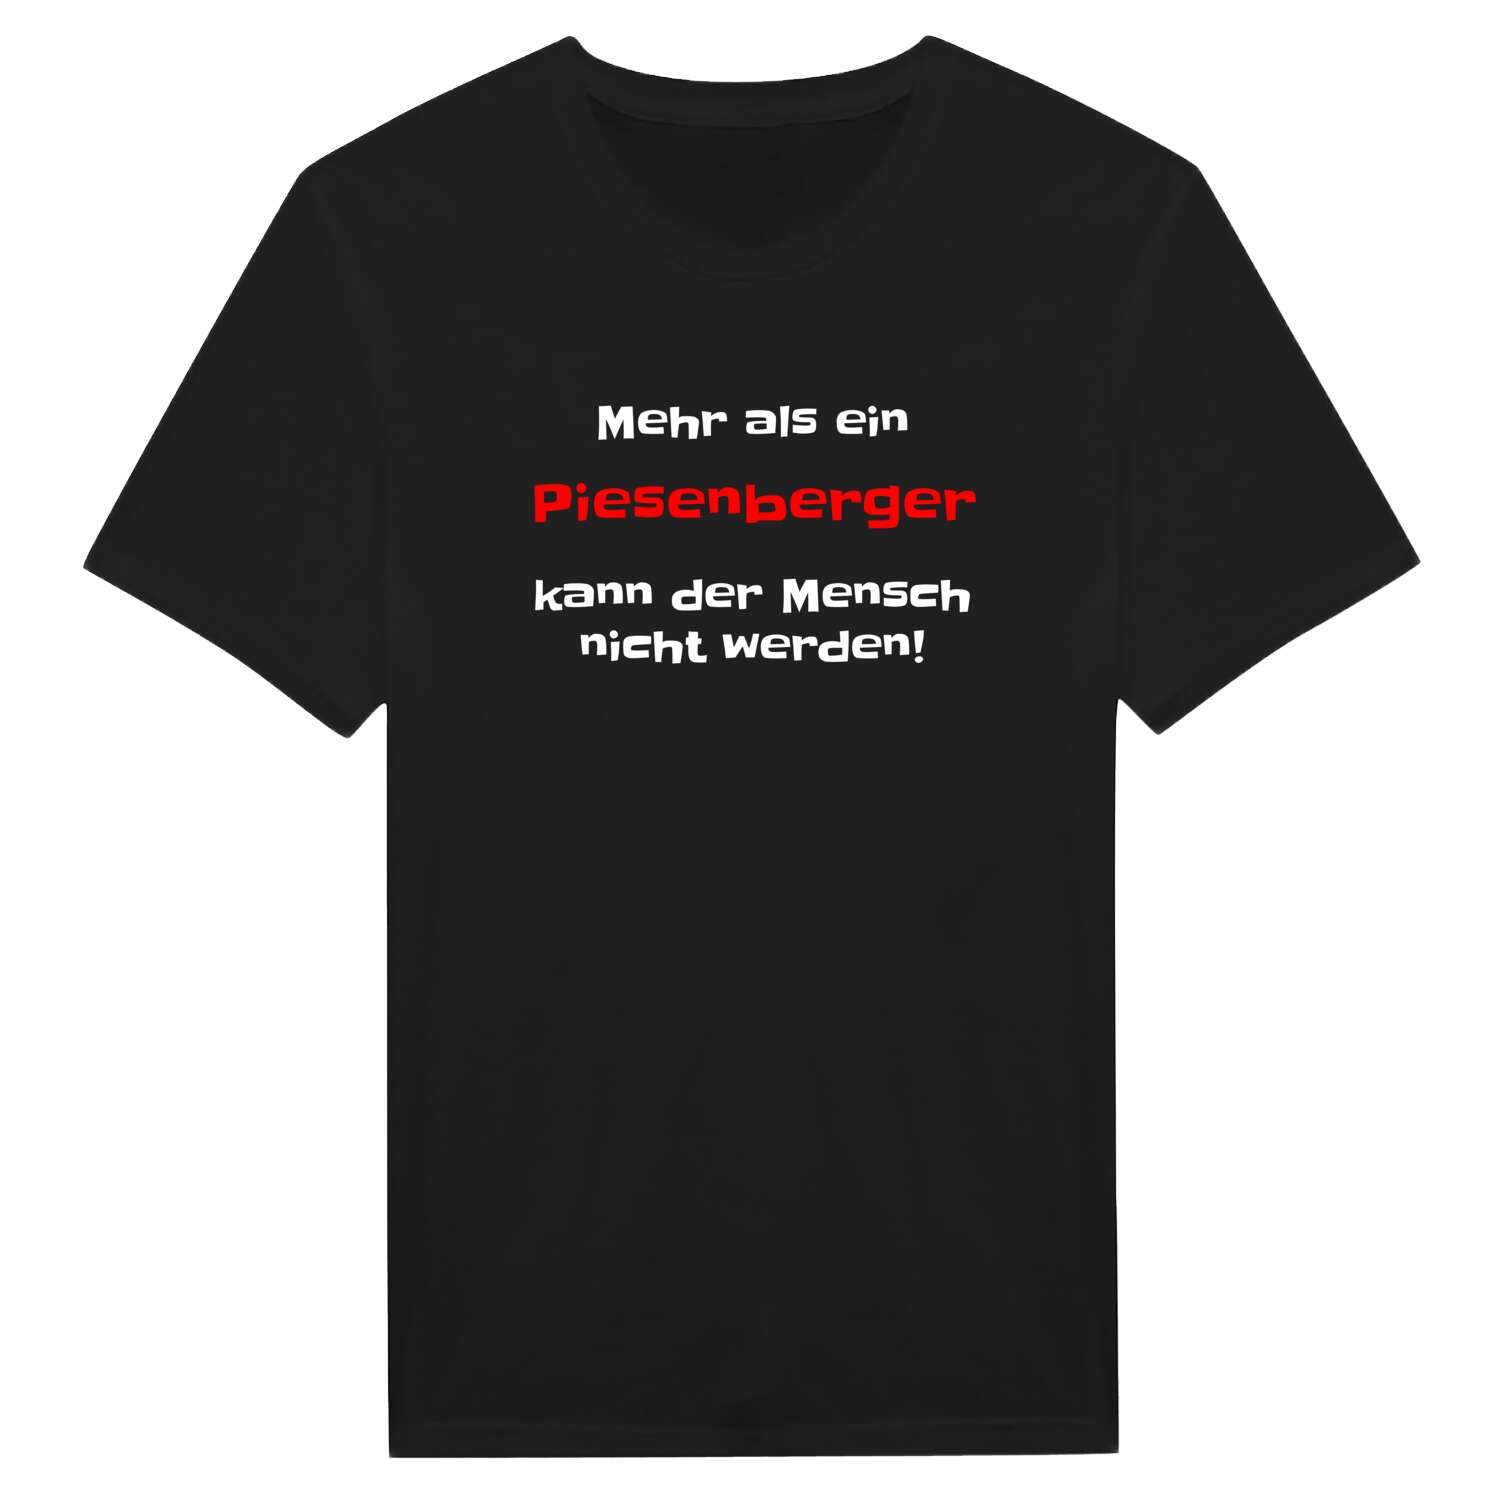 Piesenberg T-Shirt »Mehr als ein«